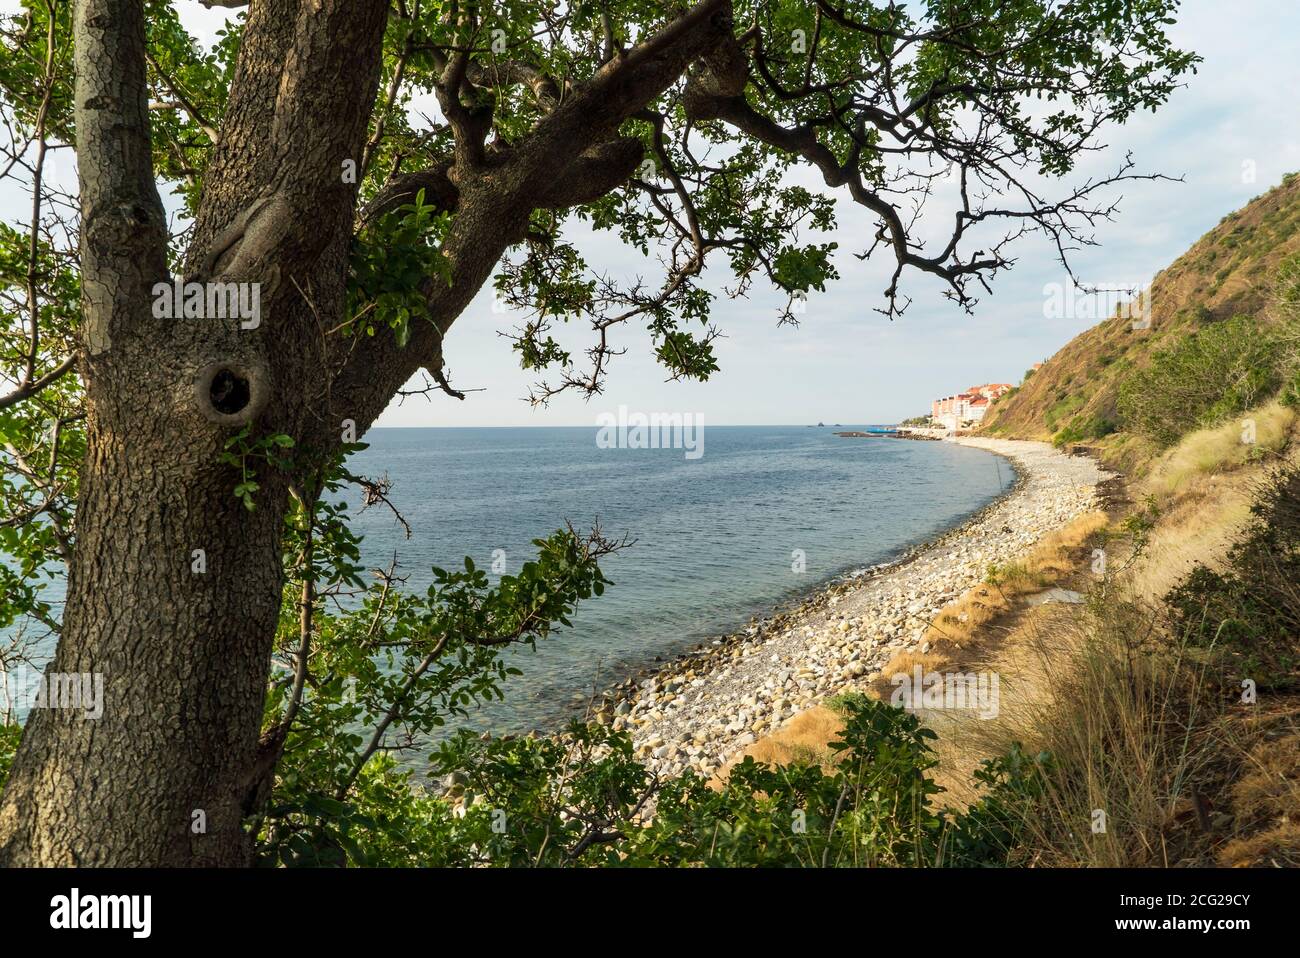 Wild beach on The black sea coast .Southern coast of Crimea Stock Photo